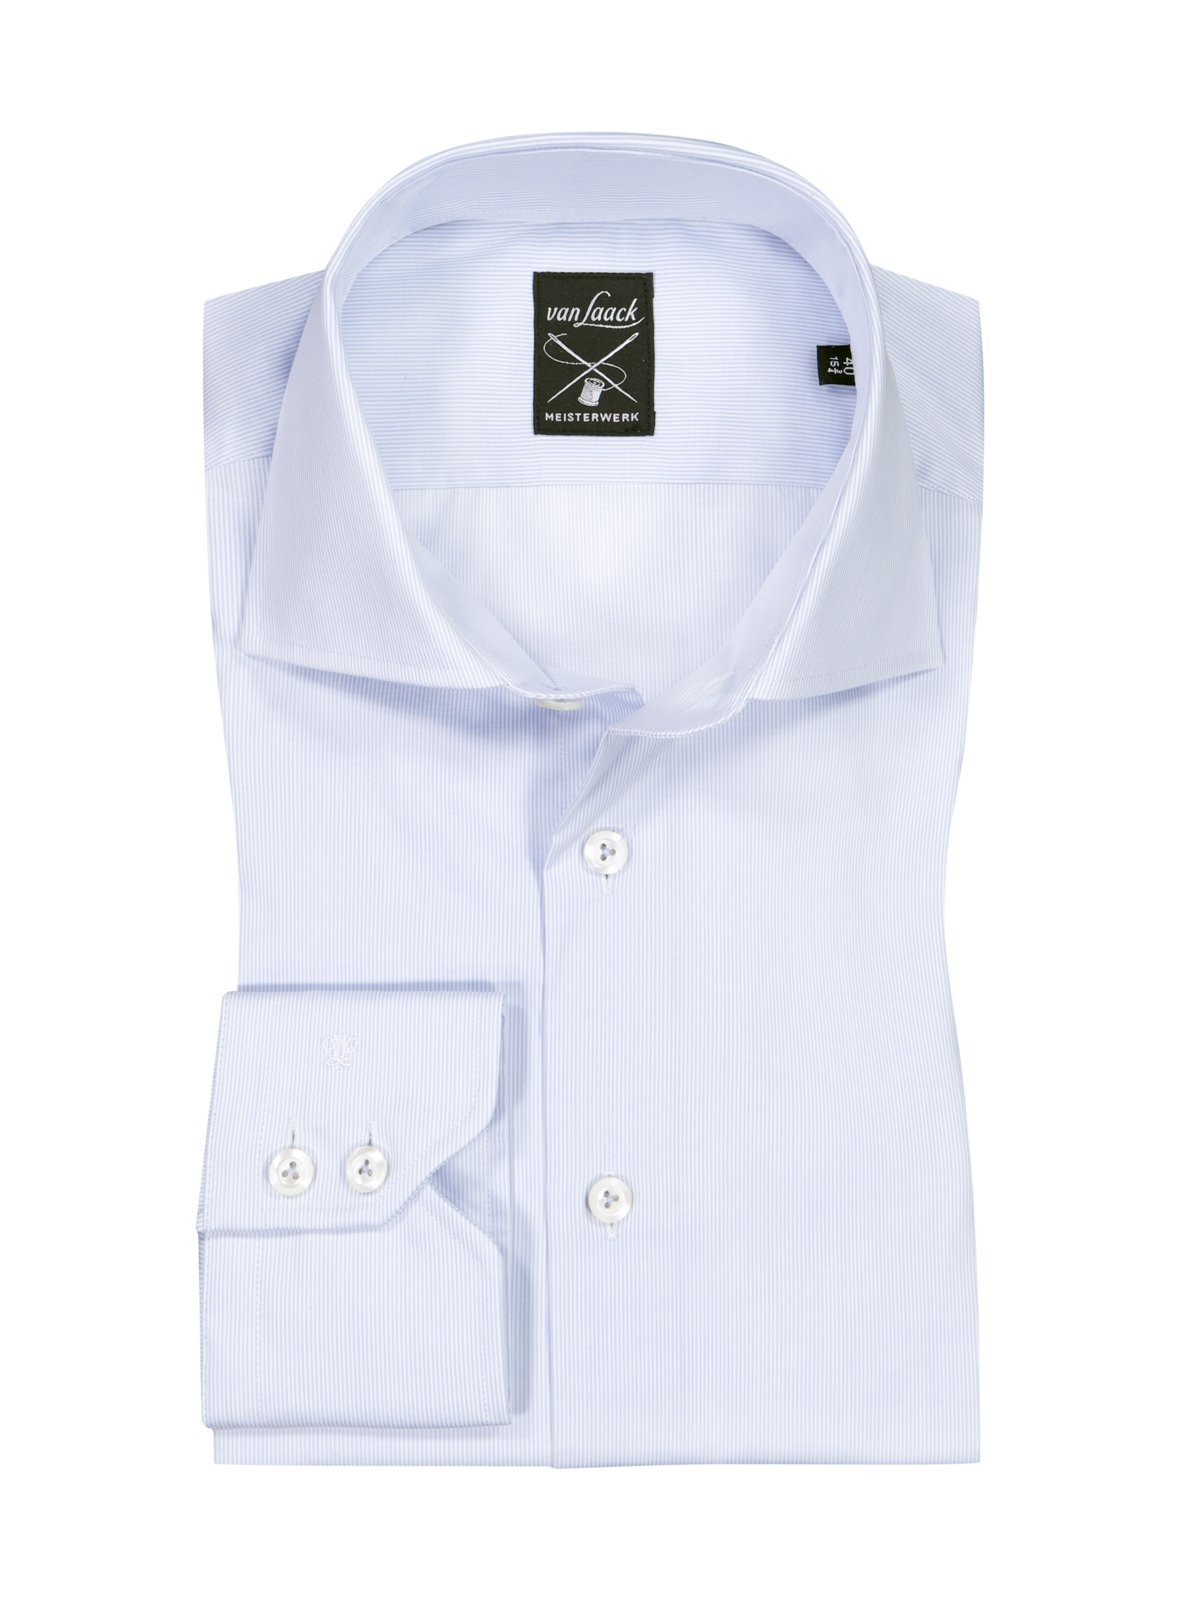 Van Laack Hemd aus Baumwolle mit feinem Streifenmuster, Tailored Fit product